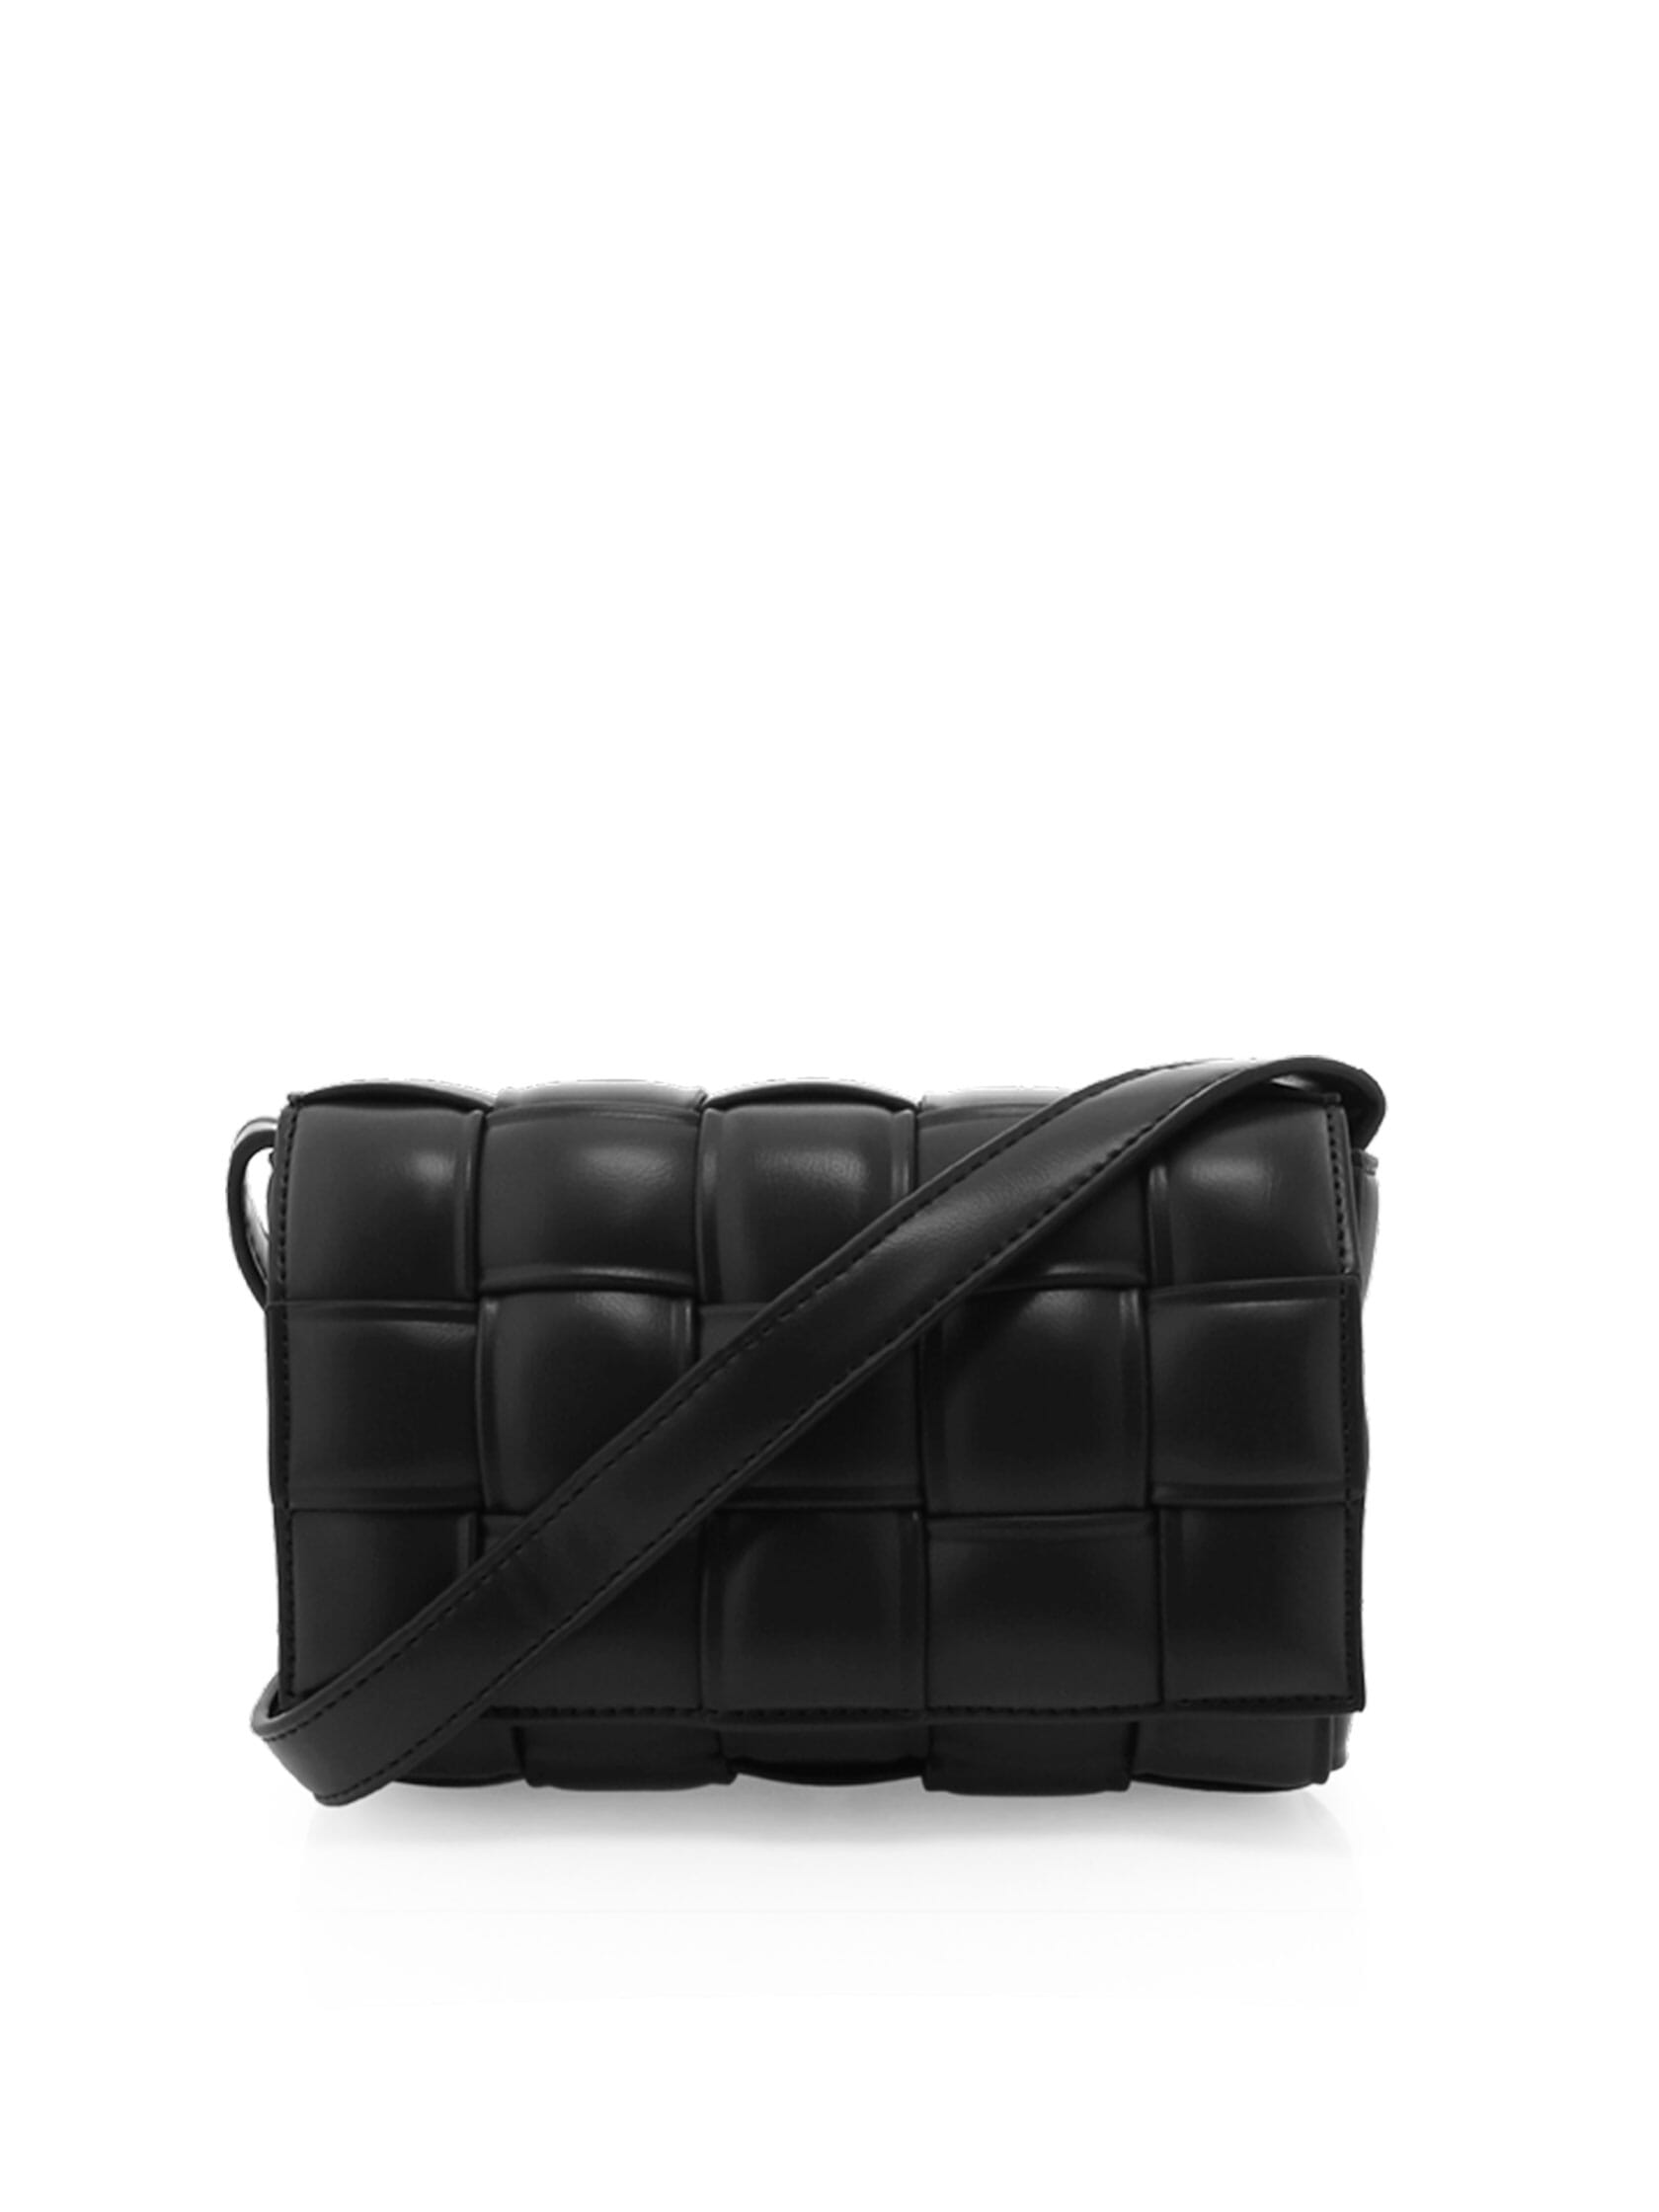 BILLINI | Bronwyn Shoulder Bag in Black| FashionPass